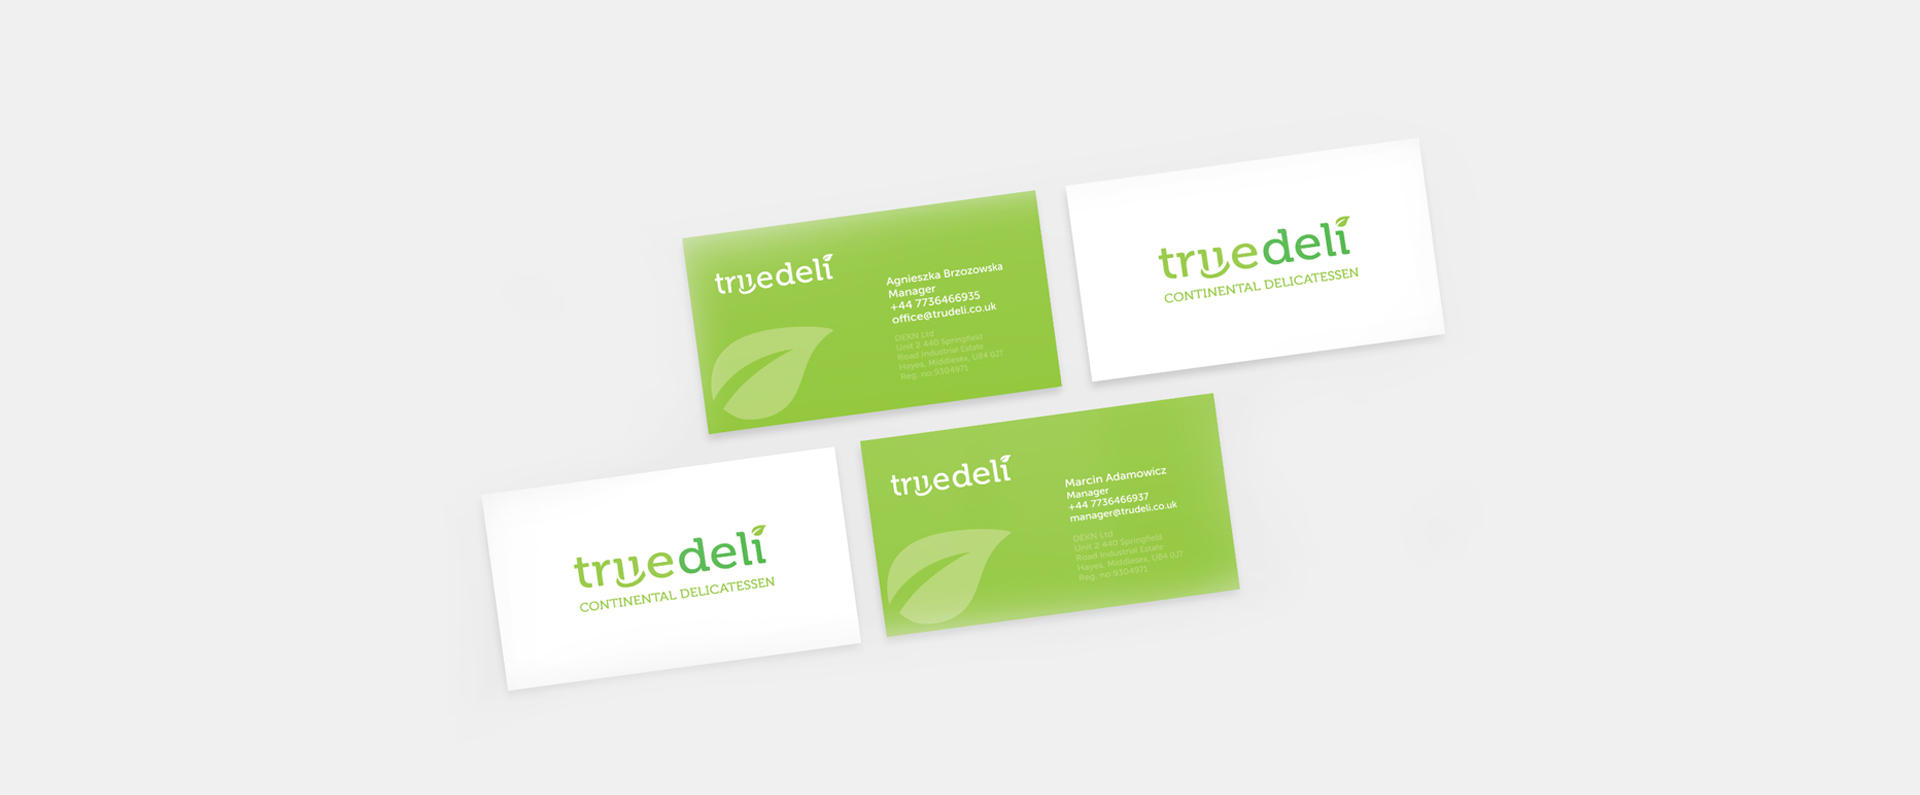 Truedeli - Realizacja - Agencja ROXART